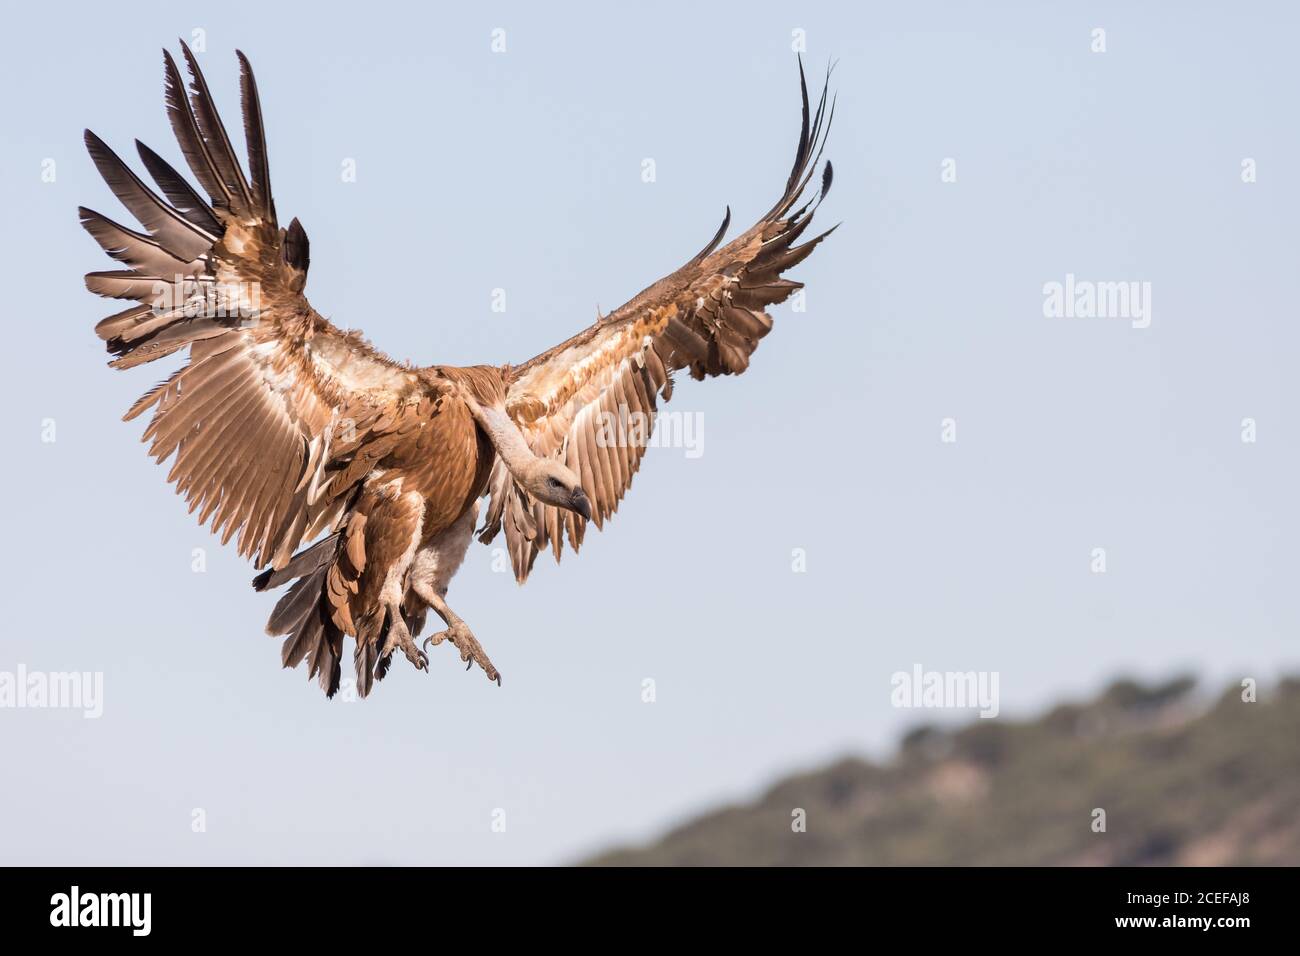 Incredibile avvoltoio selvaggio che si eleva contro il cielo blu senza nuvole sul sole giorno in natura Foto Stock